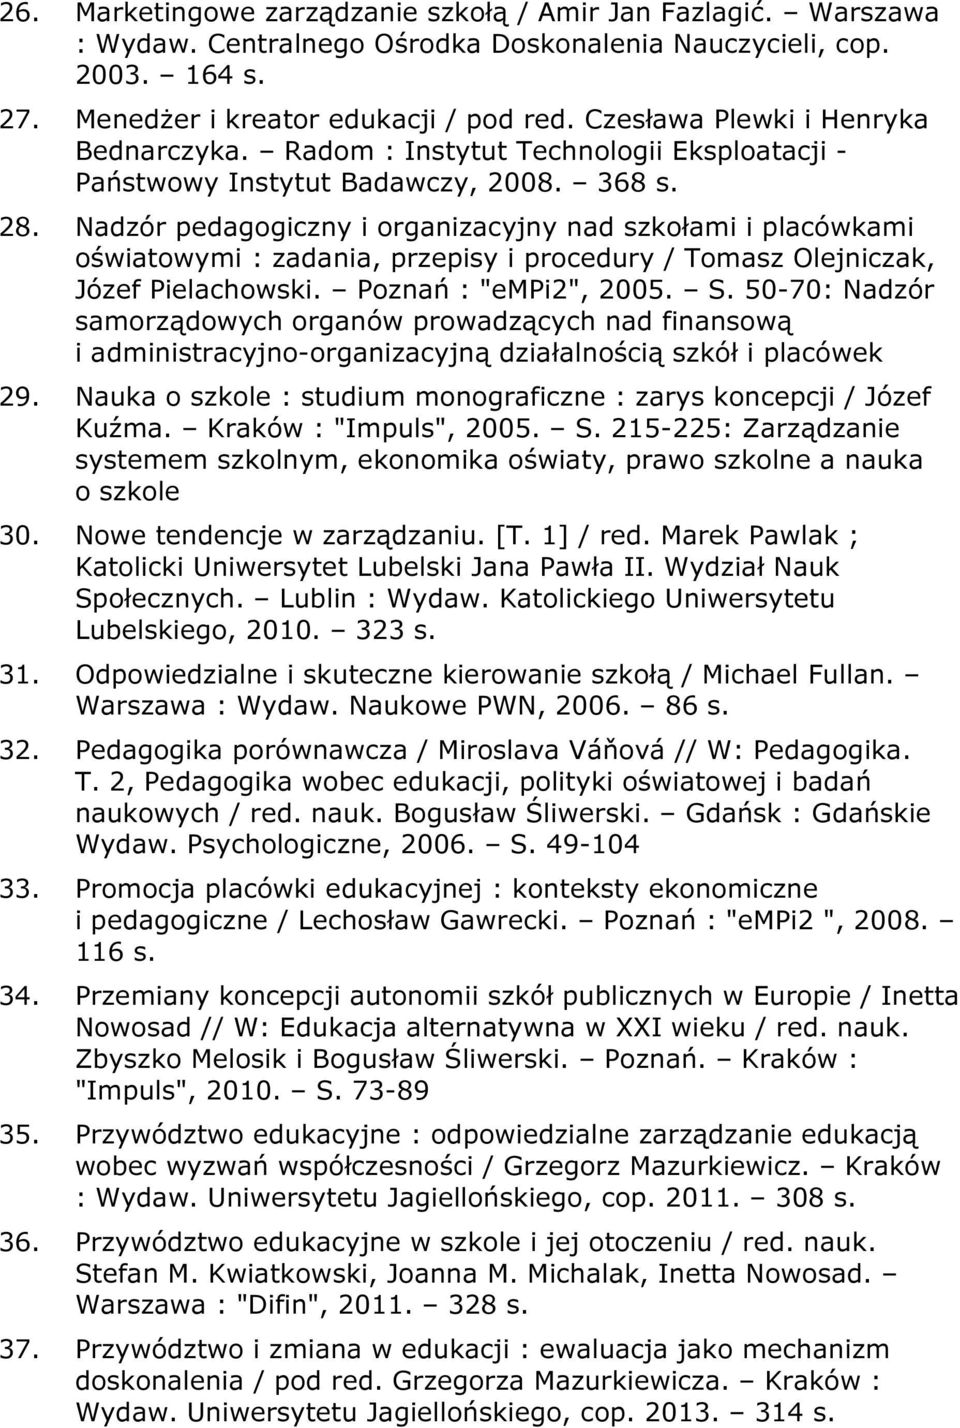 Nadzór pedagogiczny i organizacyjny nad szkołami i placówkami oświatowymi : zadania, przepisy i procedury / Tomasz Olejniczak, Józef Pielachowski. Poznań : "empi2", 2005. S.